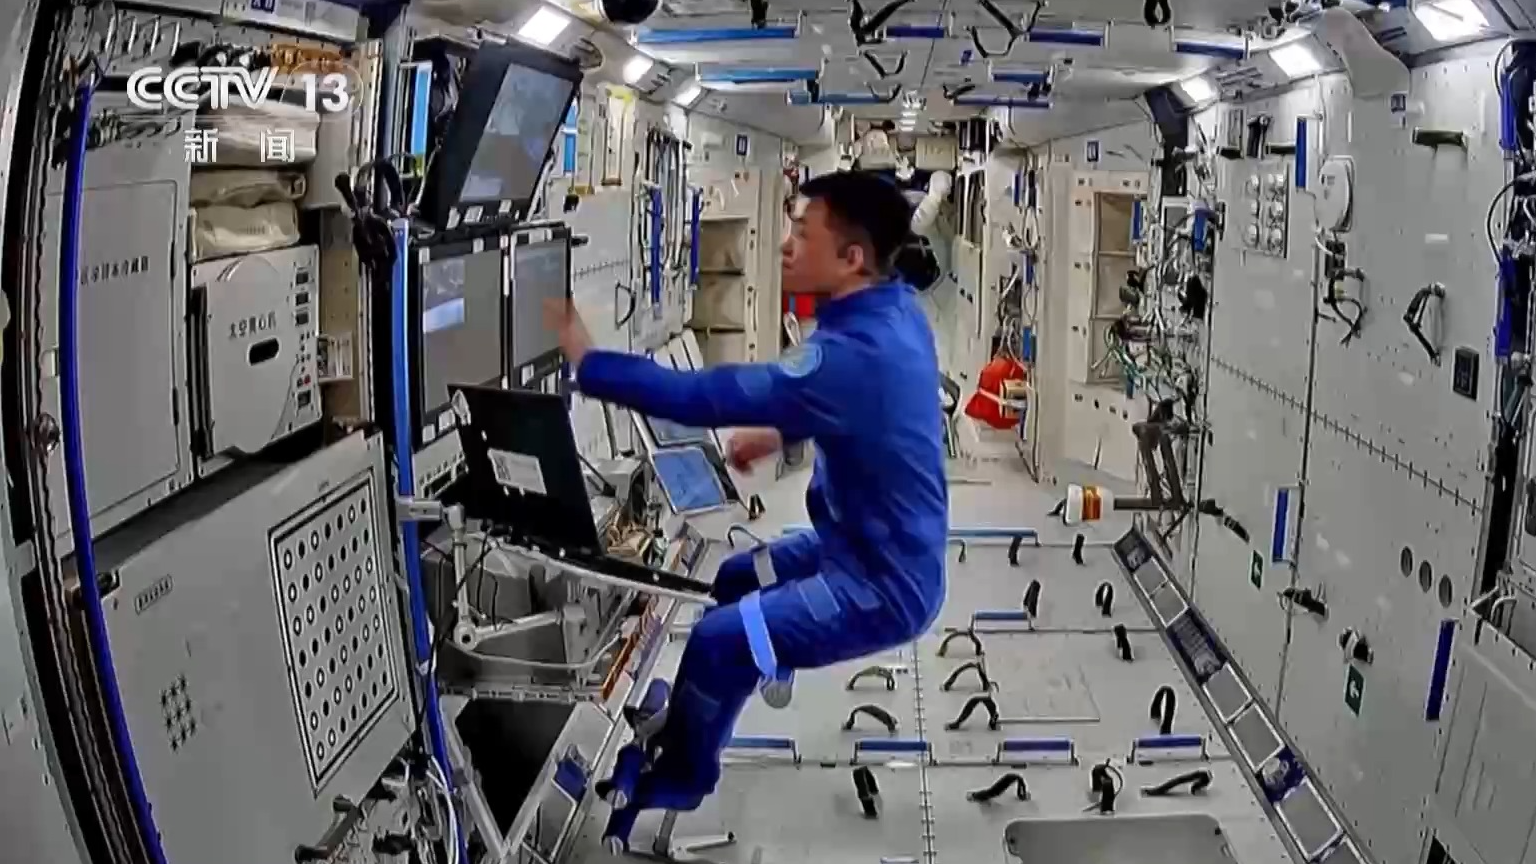 Shenzhou-18 taikonaut Li Guangsu assists the spacewalk from inside the Tianhe core module of the CSS. /CMG